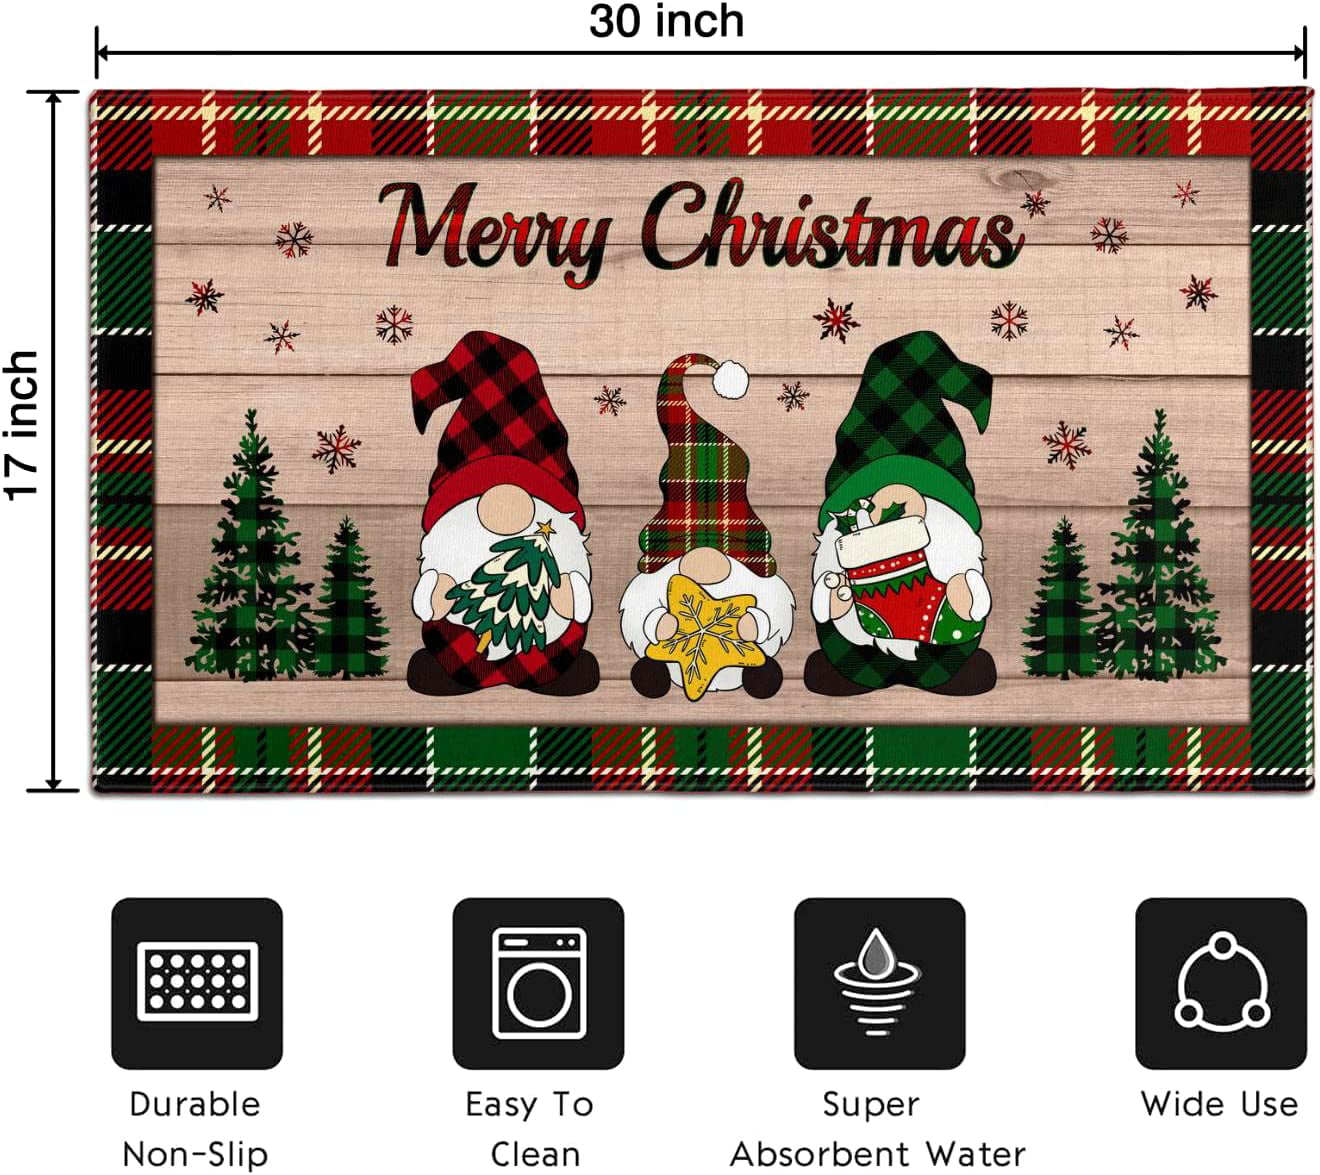 Heruiker Christmas Rugs 23”x70”Christmas Decorative Doormat Indoor